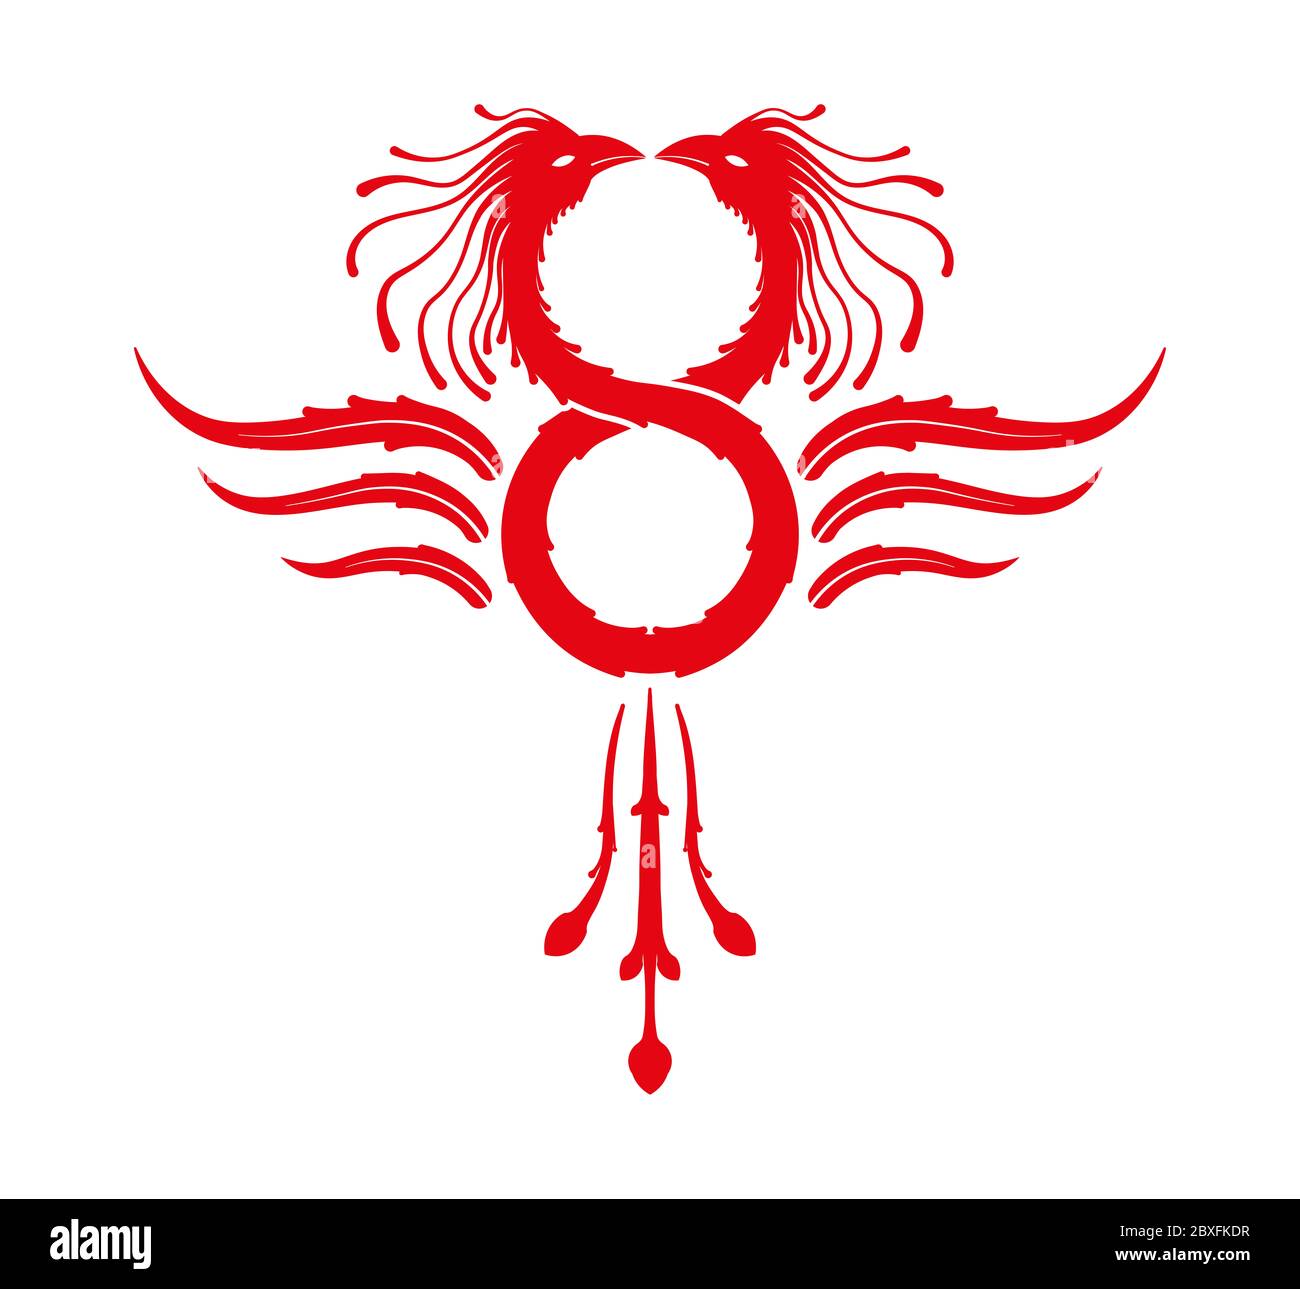 Phoenix symbole de l'infini rouge isolé sur fond blanc Banque D'Images